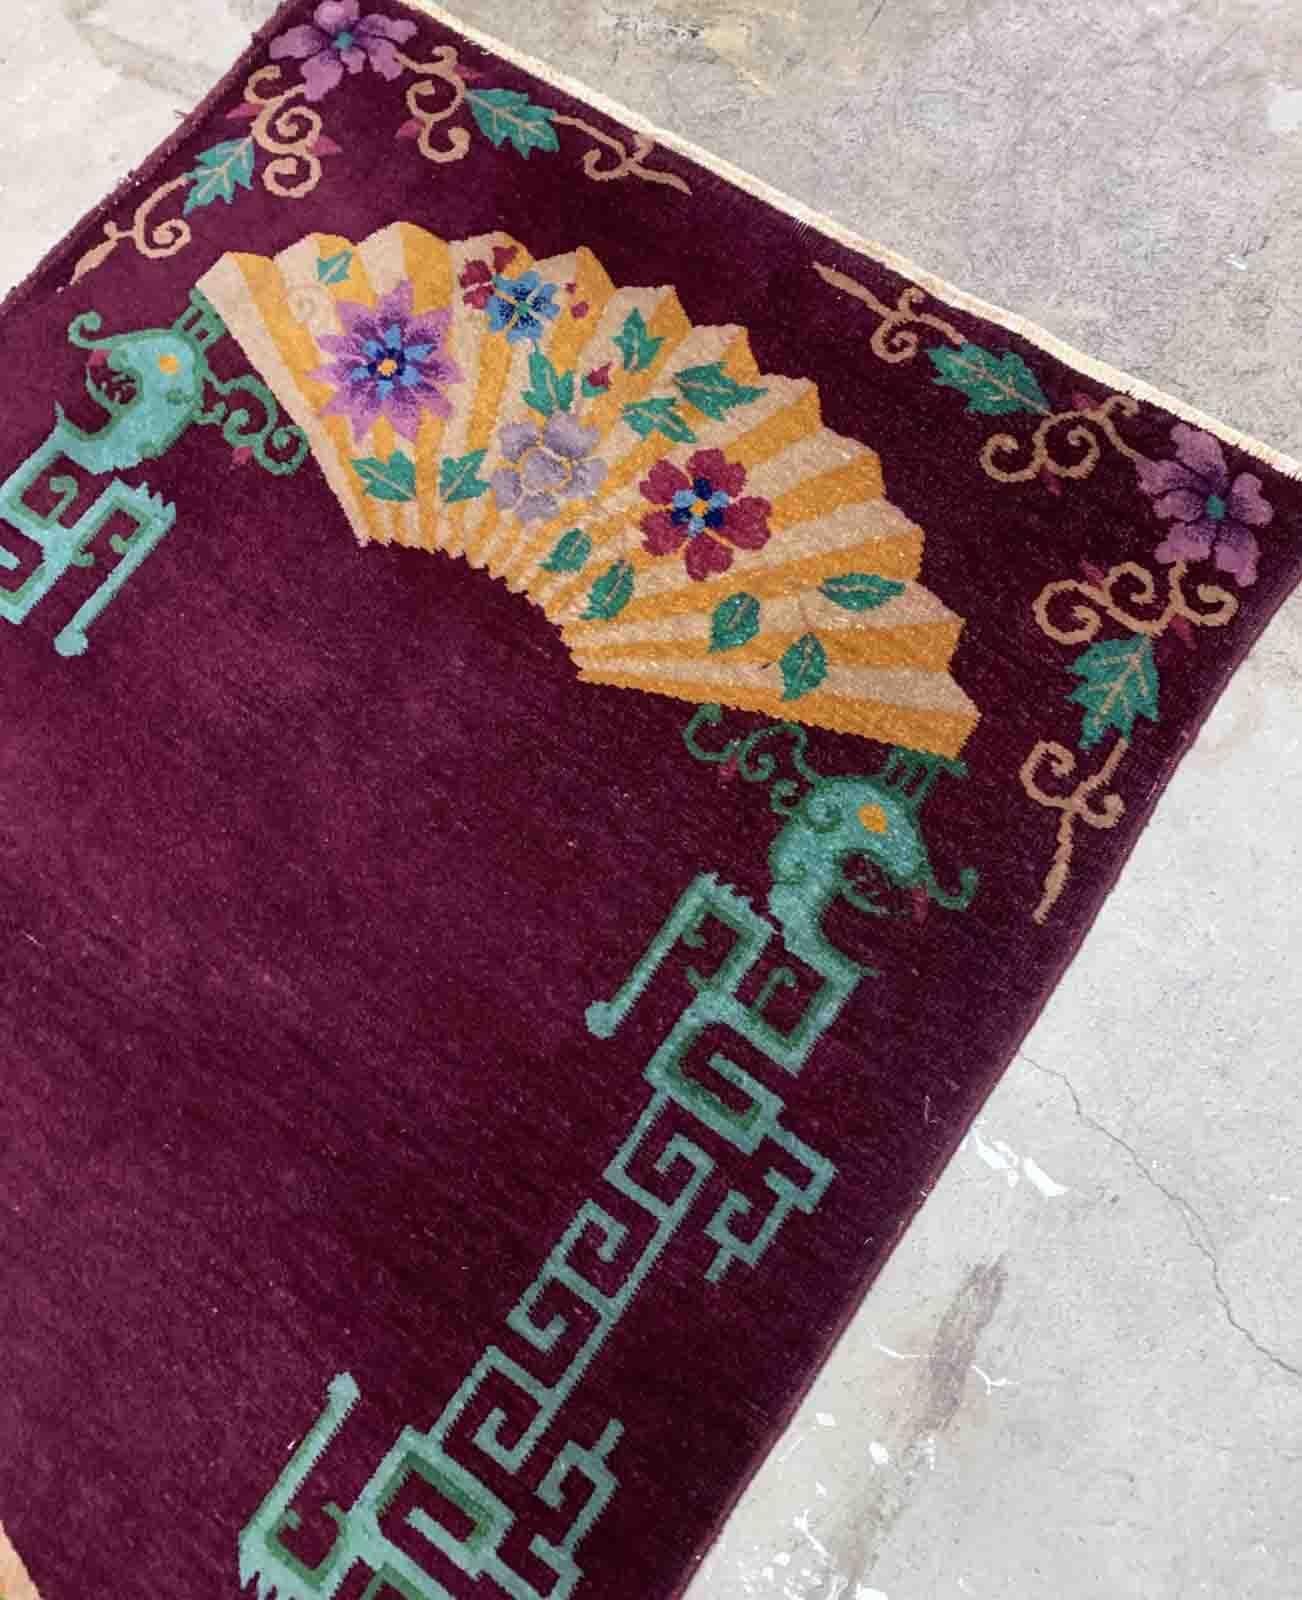 Handgefertigter antiker chinesischer Art-Déco-Teppich in violettem Farbton und sehr ungewöhnlichem Design. Der Teppich ist vom Anfang des 20. Jahrhunderts und in gutem Originalzustand. 

-zustand: original gut,

-um: 1920er Jahre,

-größe: